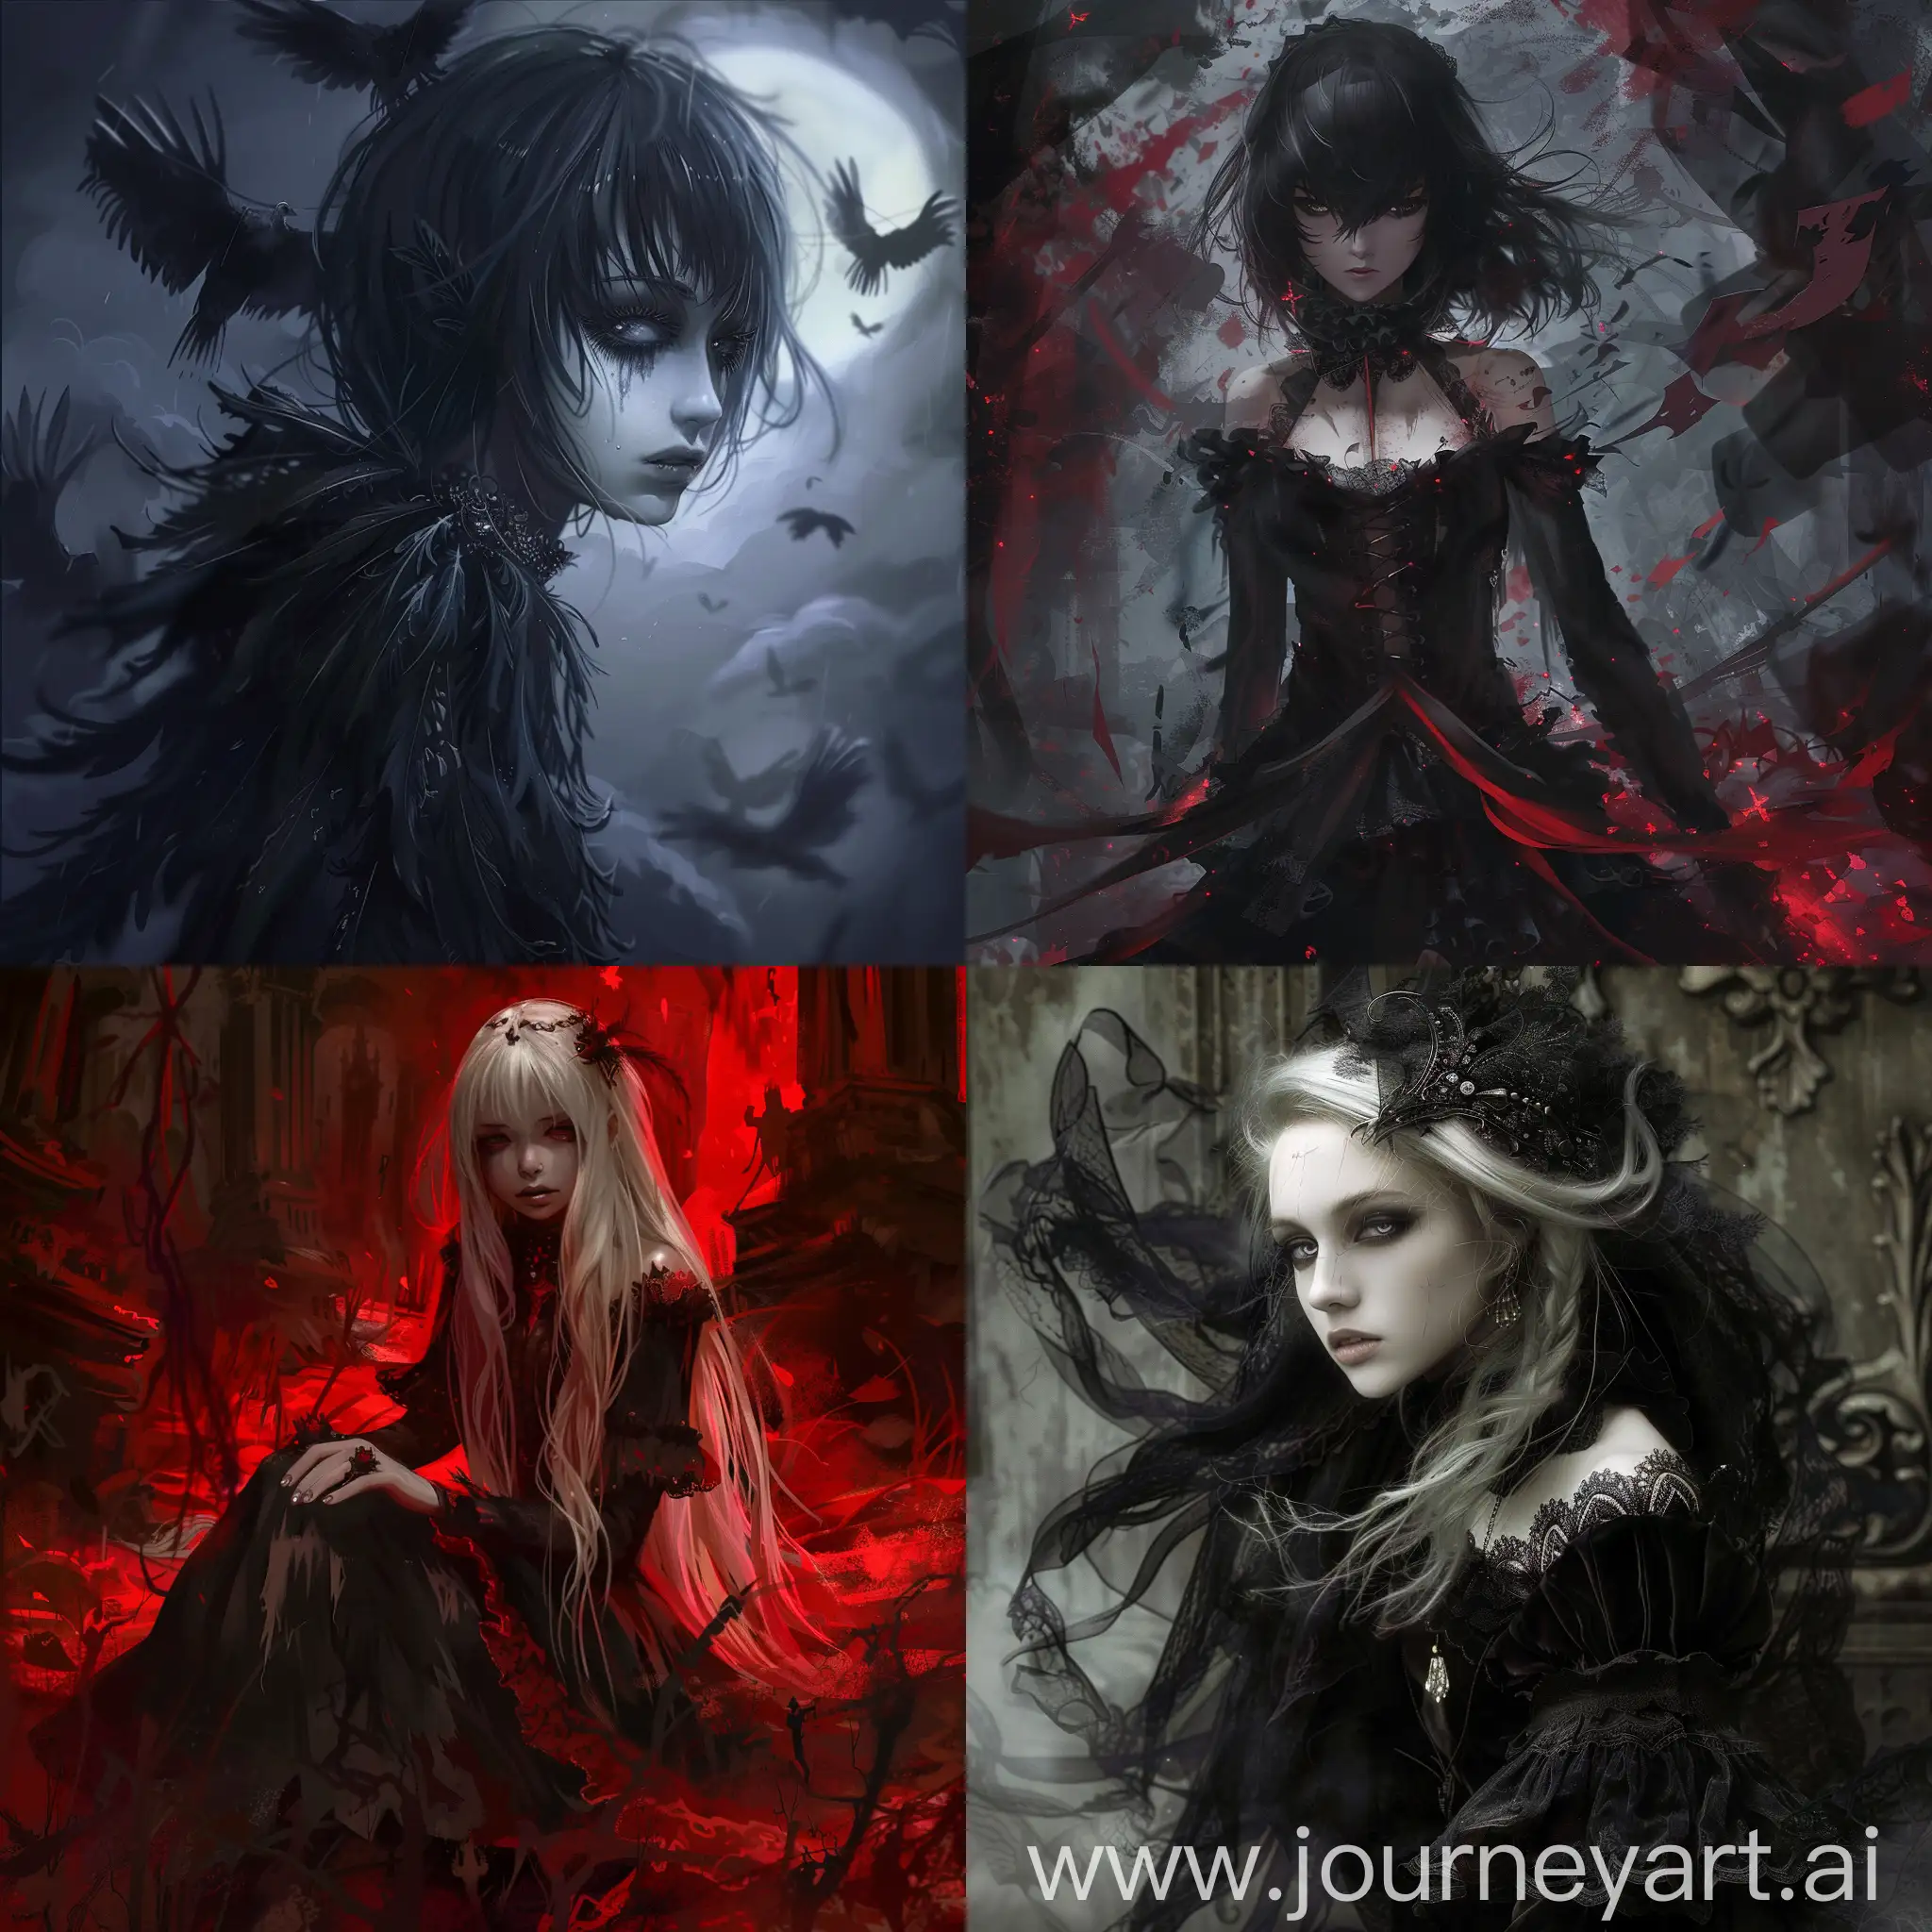 Dark fantasy, gothic horror, anime style